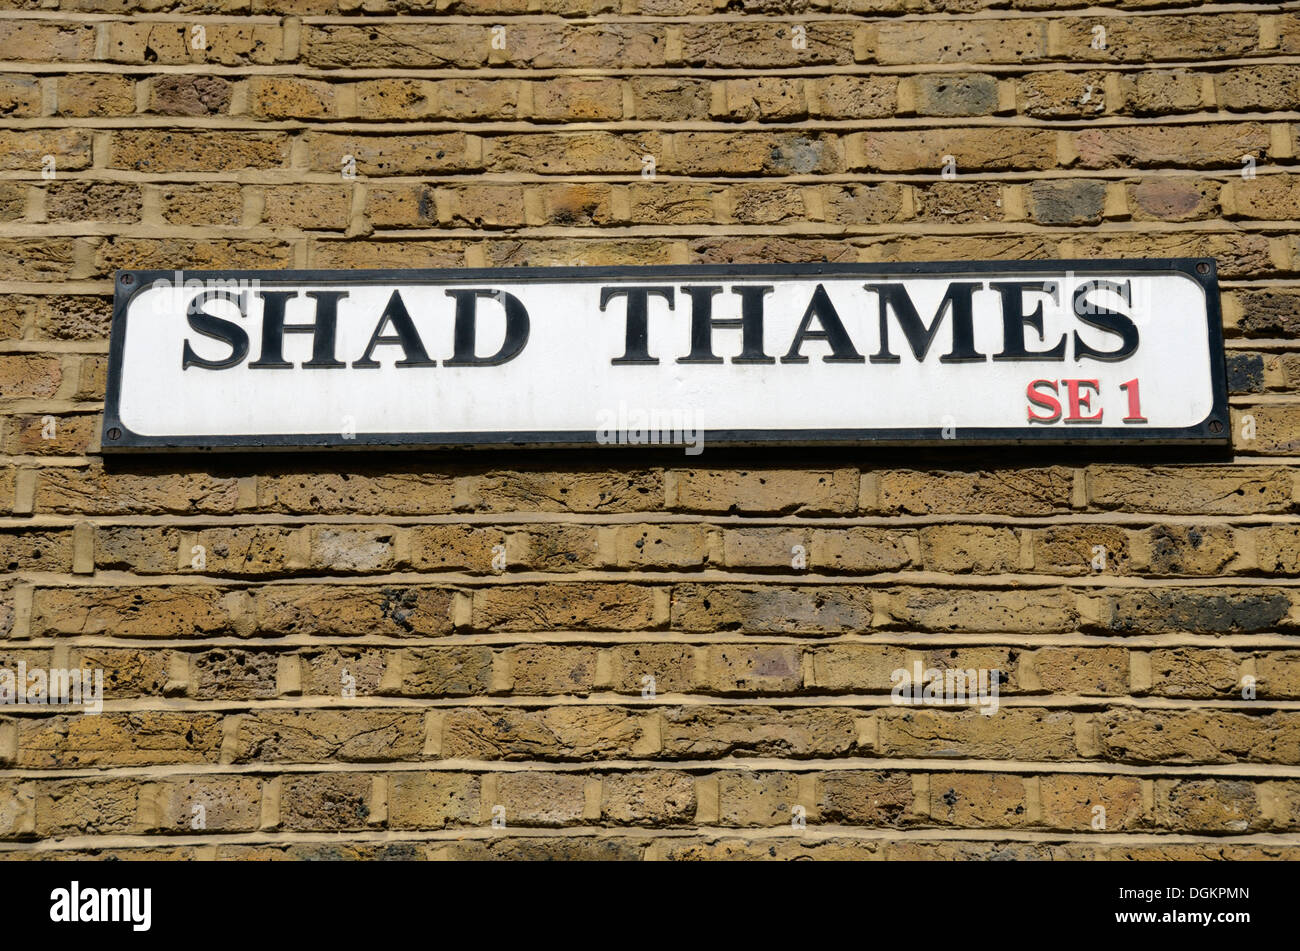 SE1 Shad Thames Street sign. Banque D'Images